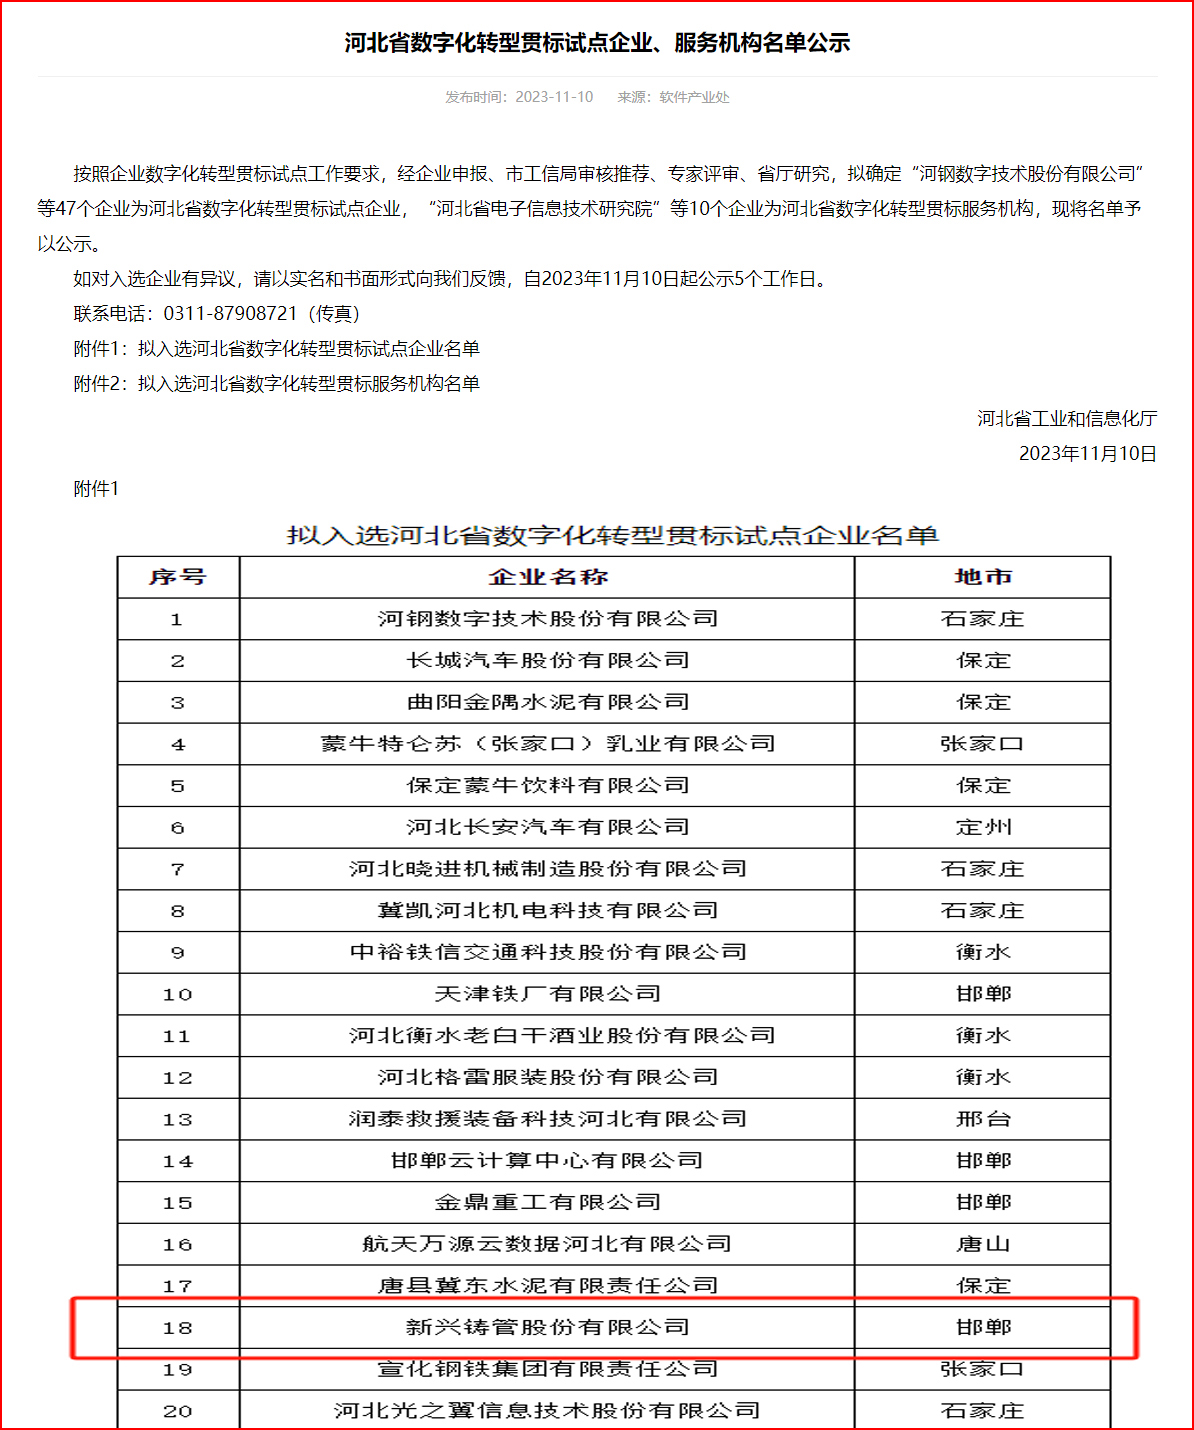  新兴铸管入选《河北省数字化转型贯标试点企业名单》